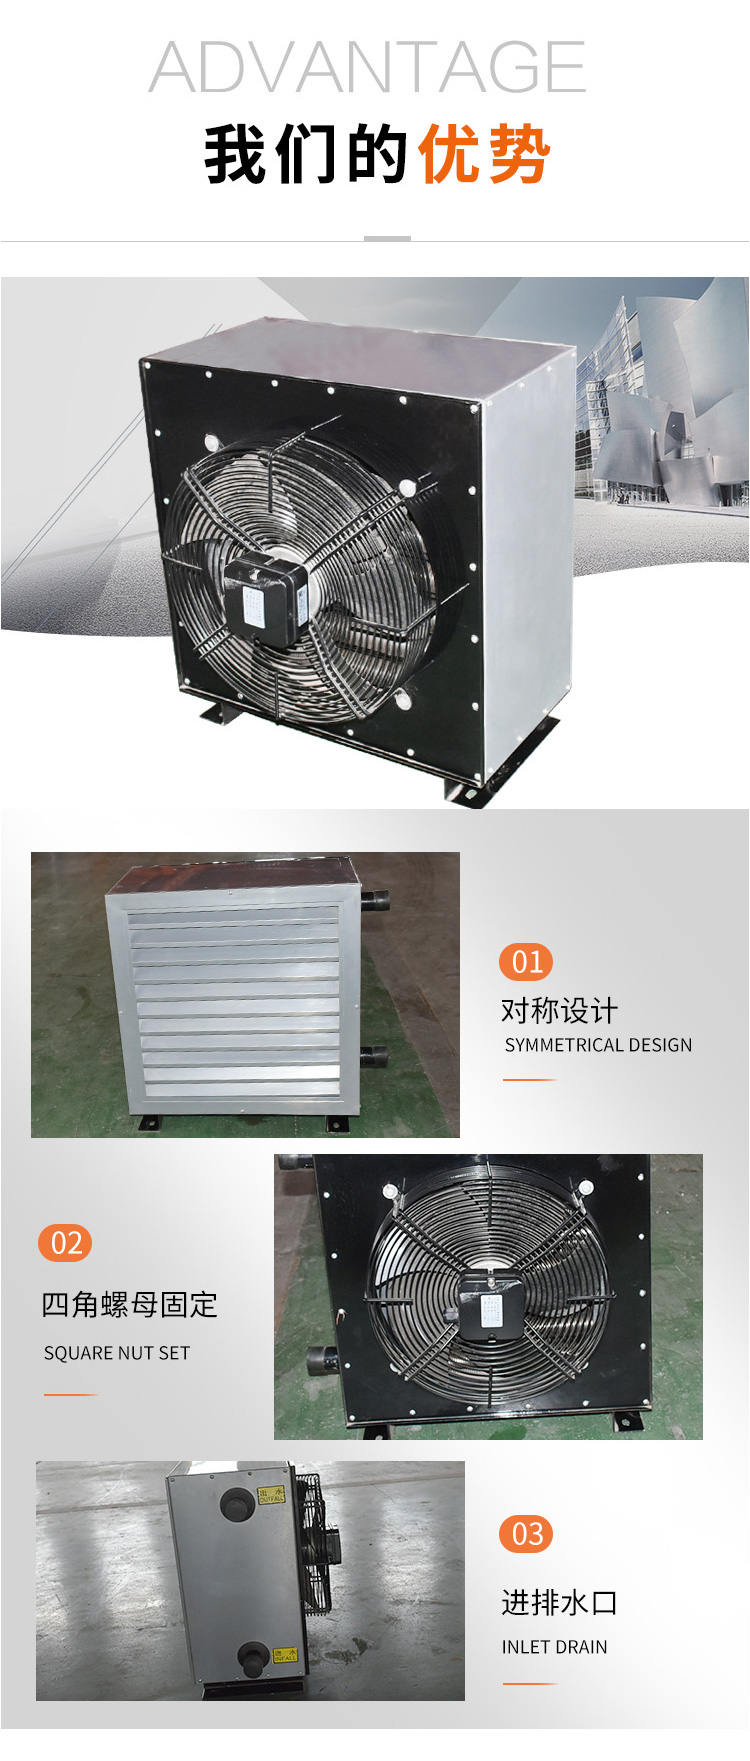 蒸汽型暖风机/暖风机蒸汽型/蒸汽型工业暖风机实物展示